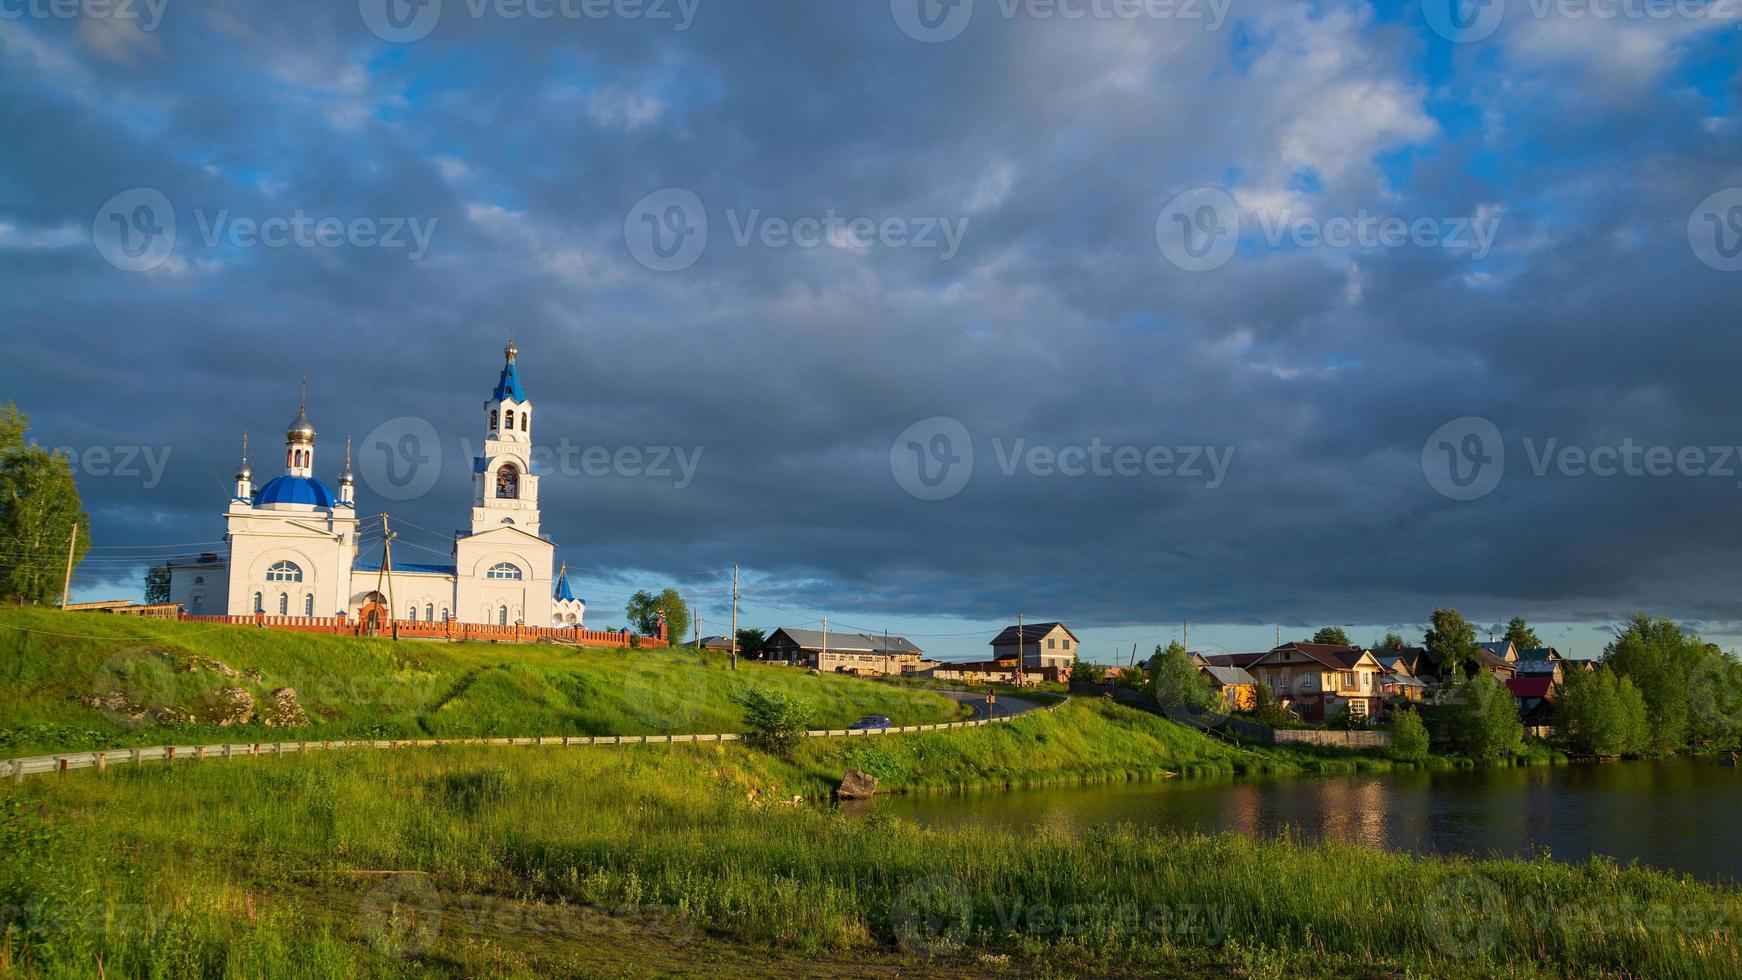 uma antiga igreja ortodoxa e uma vila na margem do rio. Sol e nuvens negras. foto